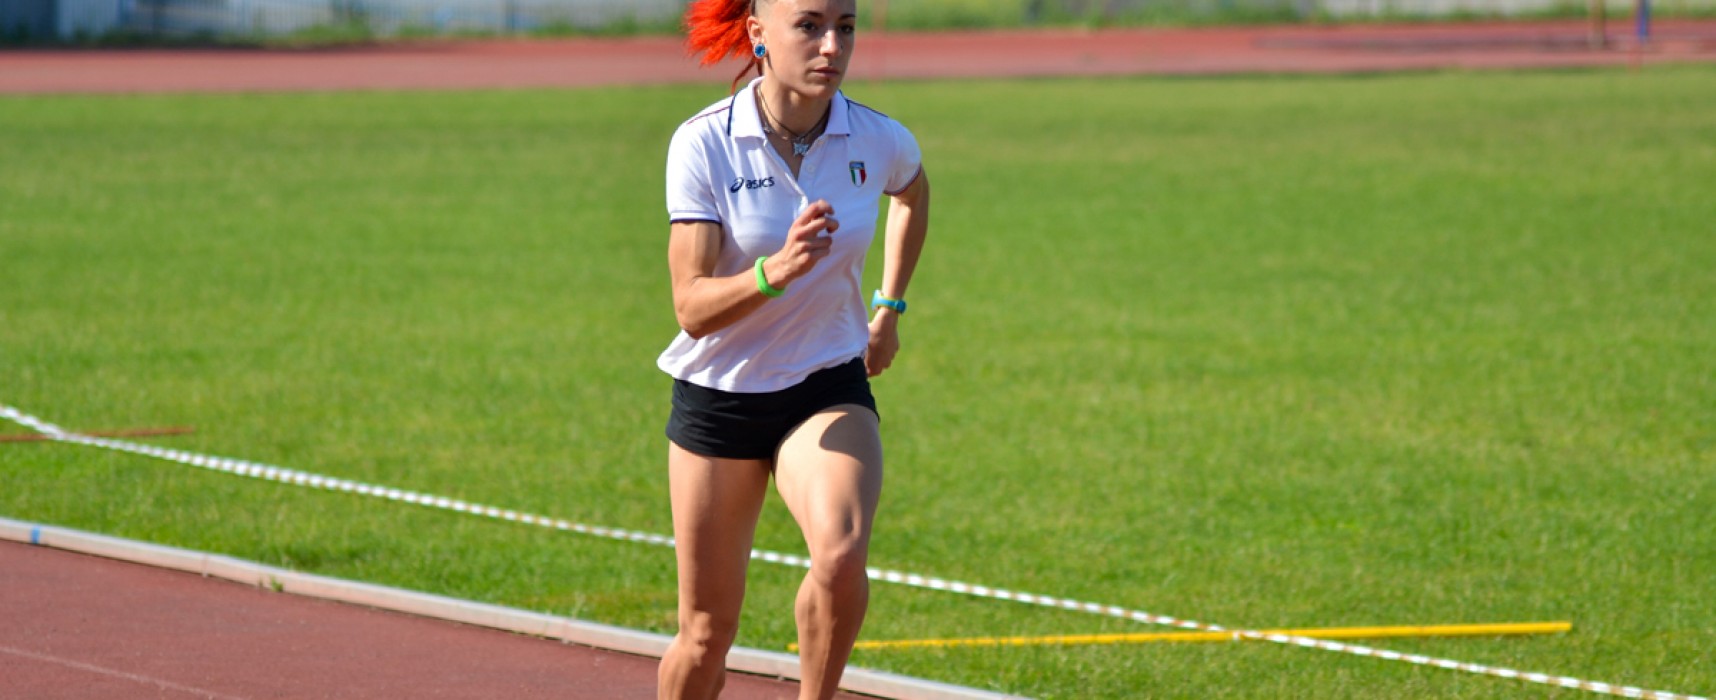 Assoluti di atletica leggera, Lucia Pasquale fuori dalla finale dei 400 metri